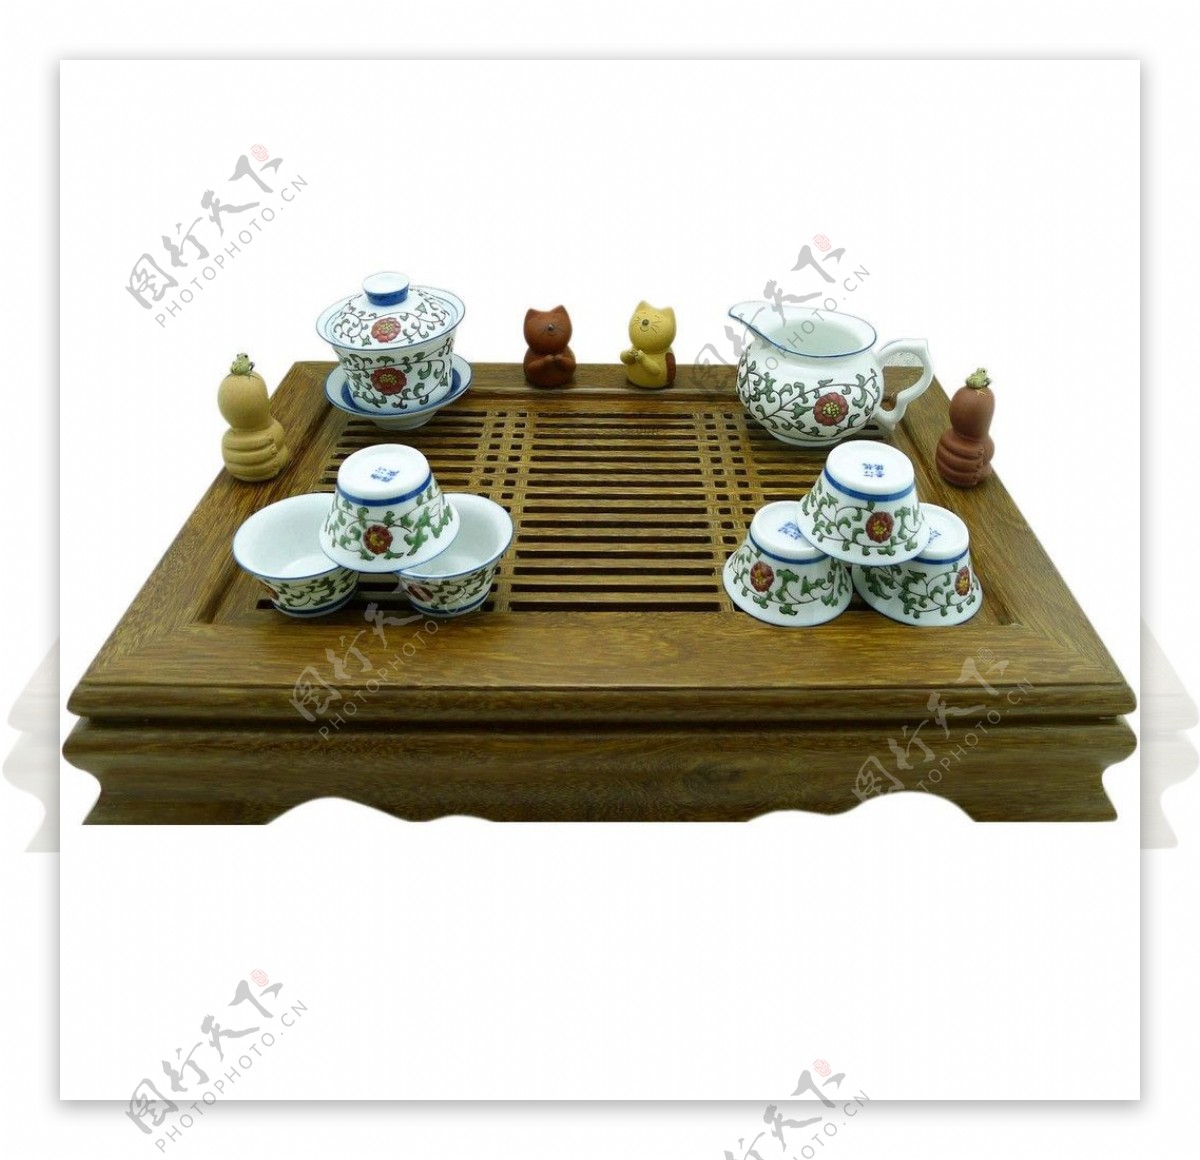 景德镇瓷器茶具图片